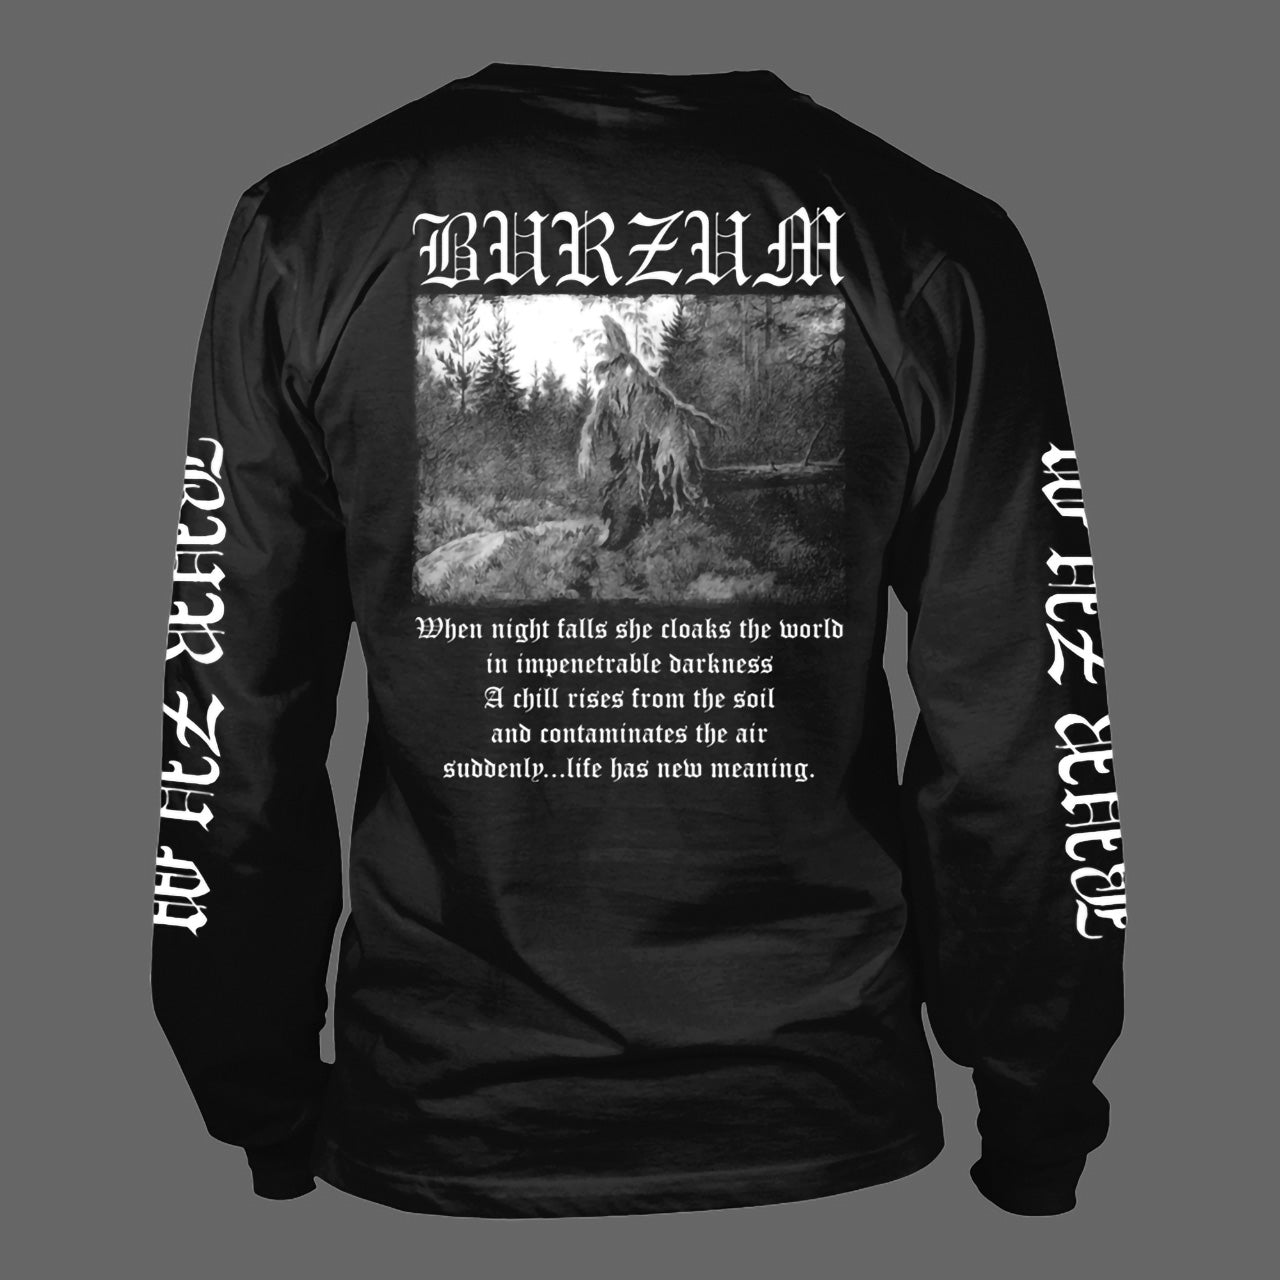 Burzum - Filosofem (Black) (Long Sleeve T-Shirt)